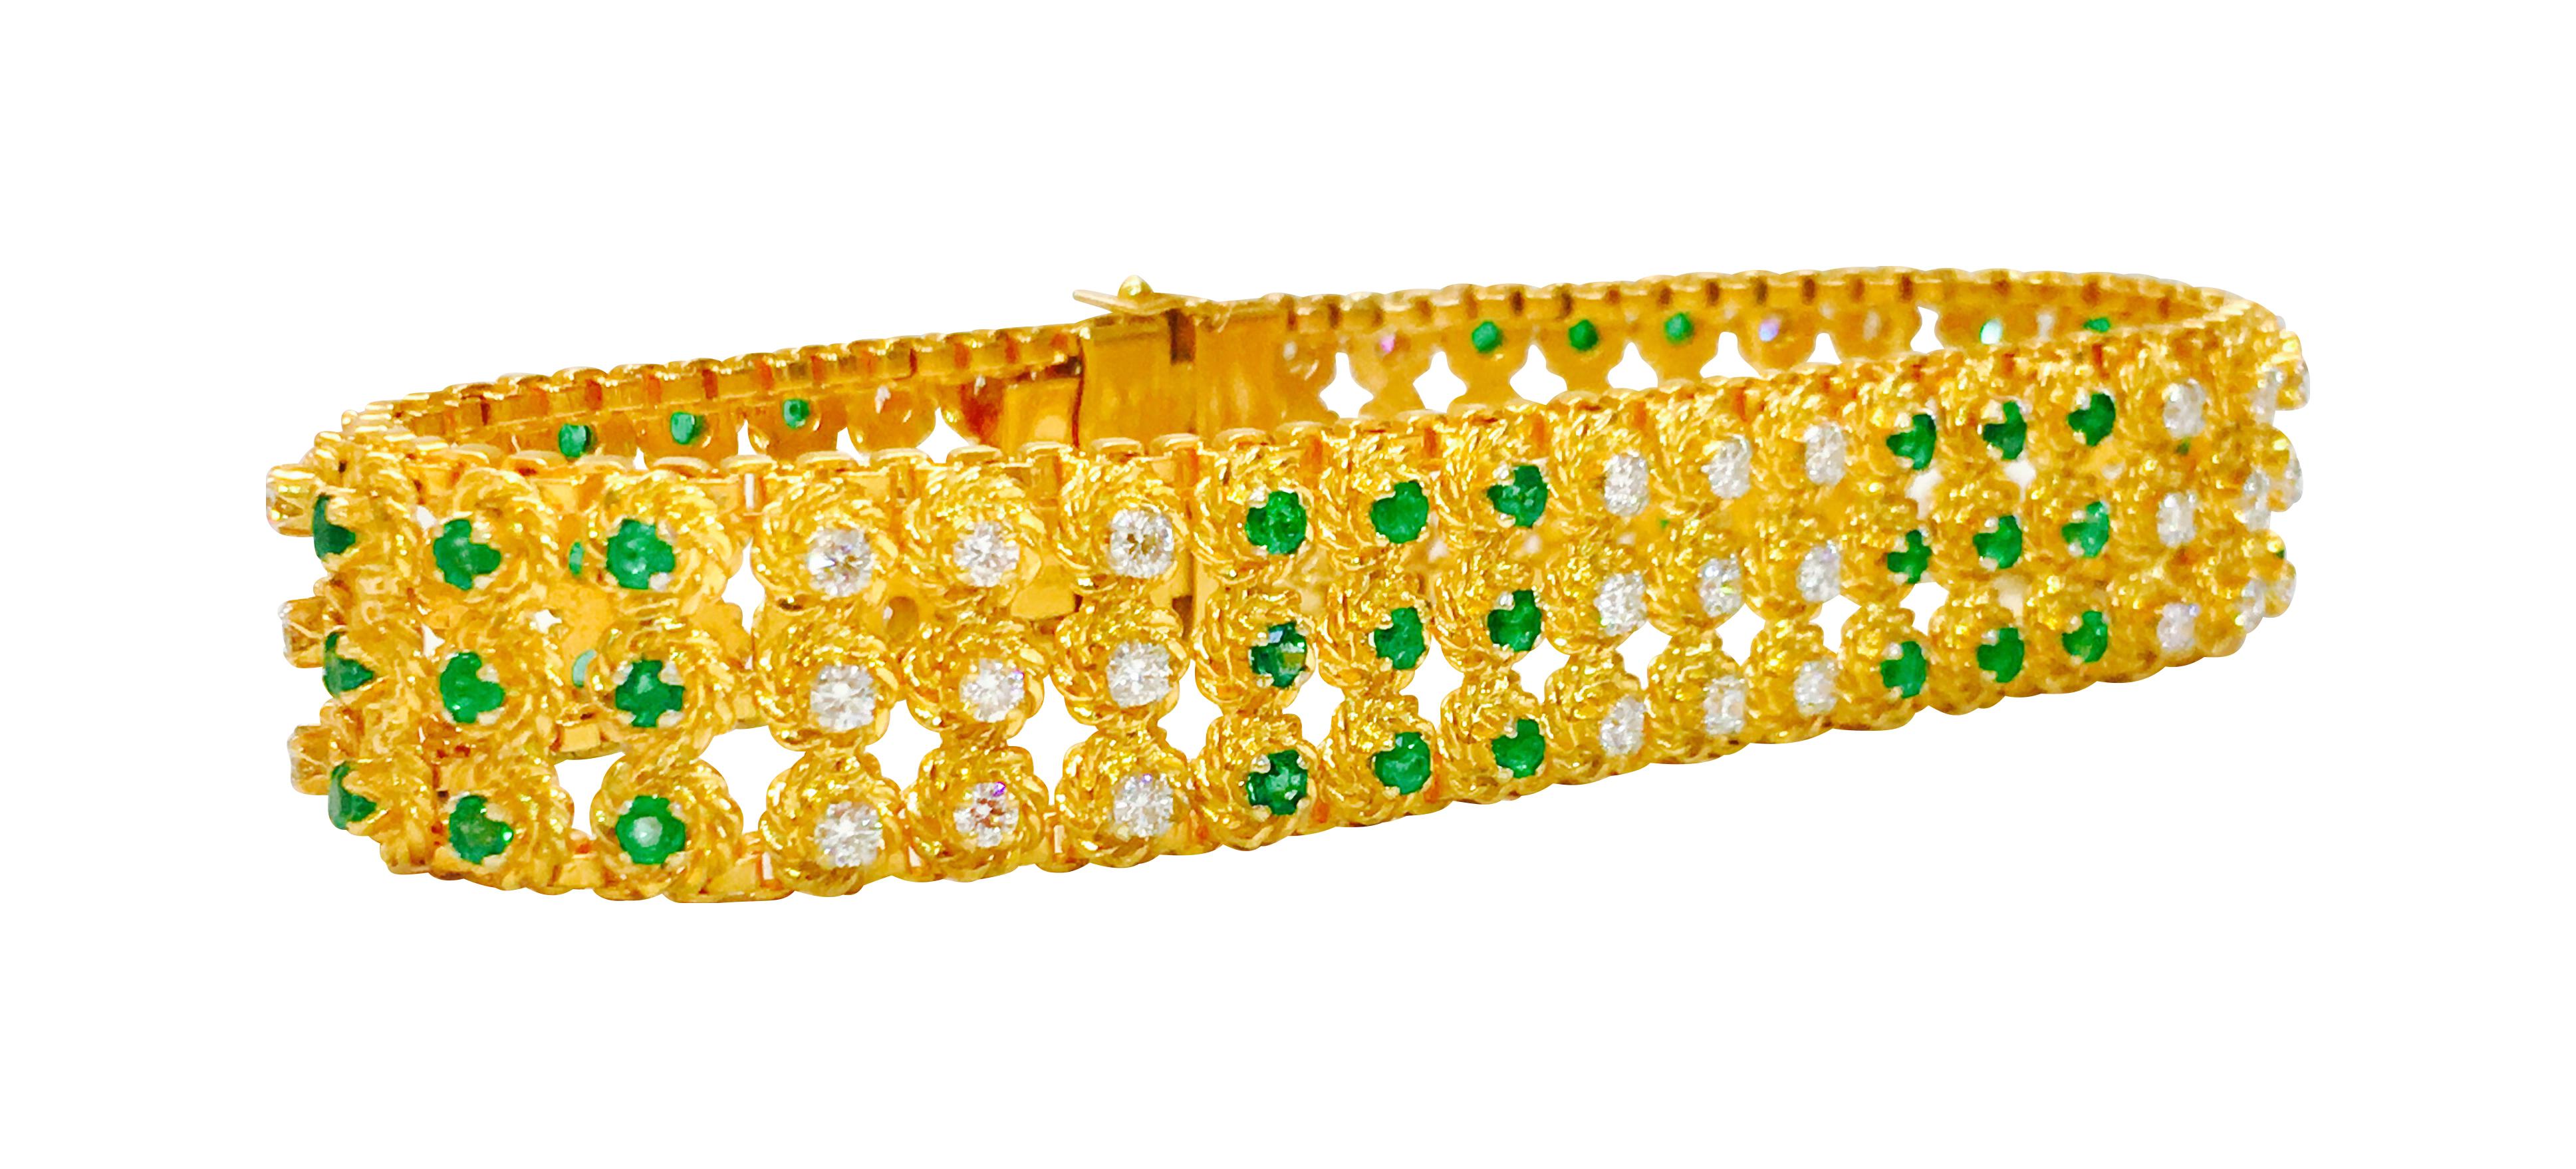 Ce bracelet est en or jaune 18k brillant et comporte de magnifiques diamants ronds totalisant 2,50 carats. Les diamants sont très clairs (pureté VVS) et ont une couleur blanche brillante (couleur E). Le bracelet contient également 2,50 carats